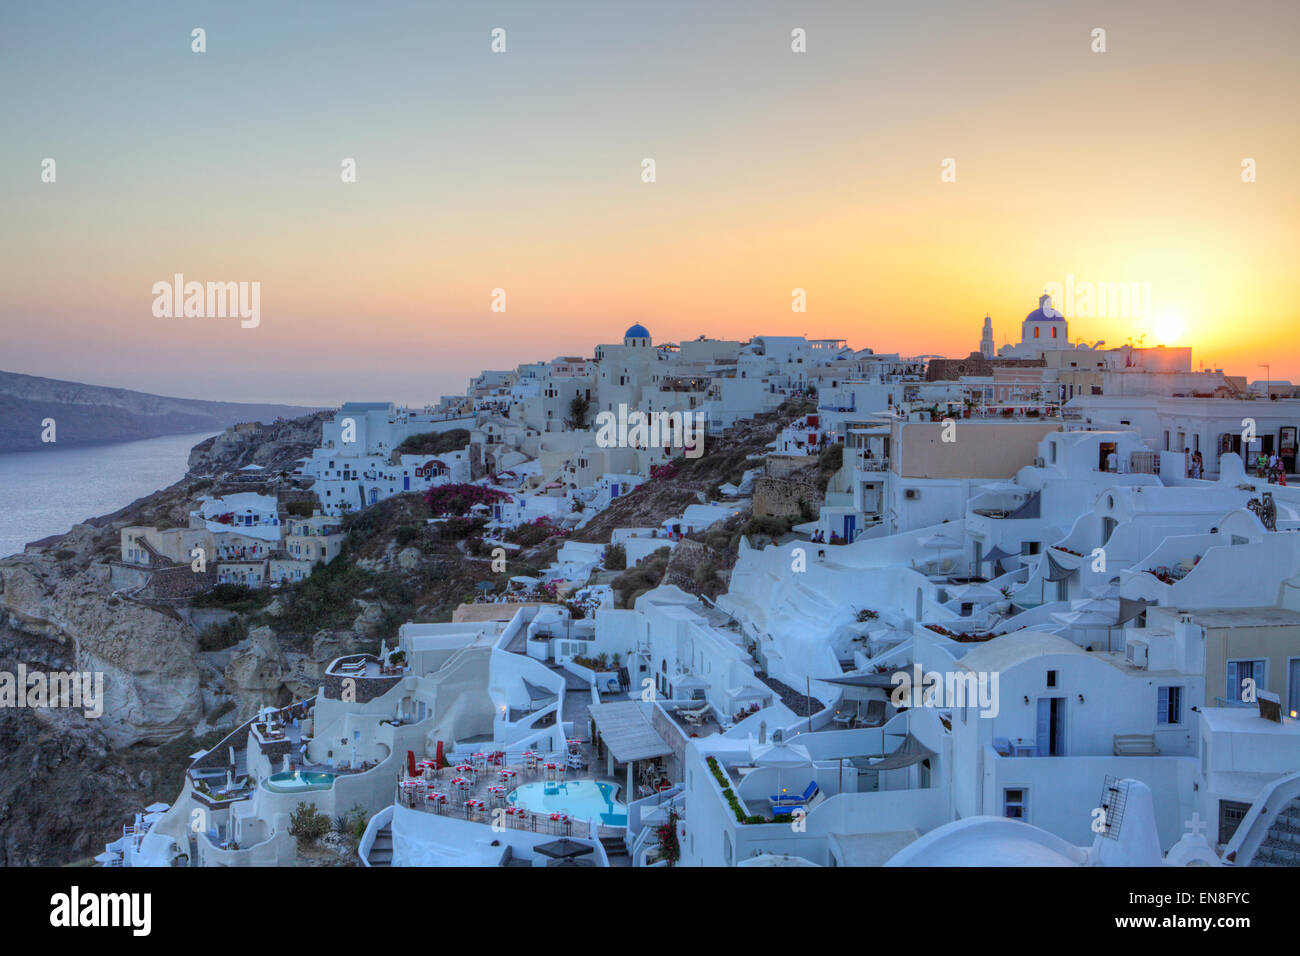 Sonnenuntergang in Oia, die kleine Stadt auf der Insel Santorini, Griechenland Stockfoto